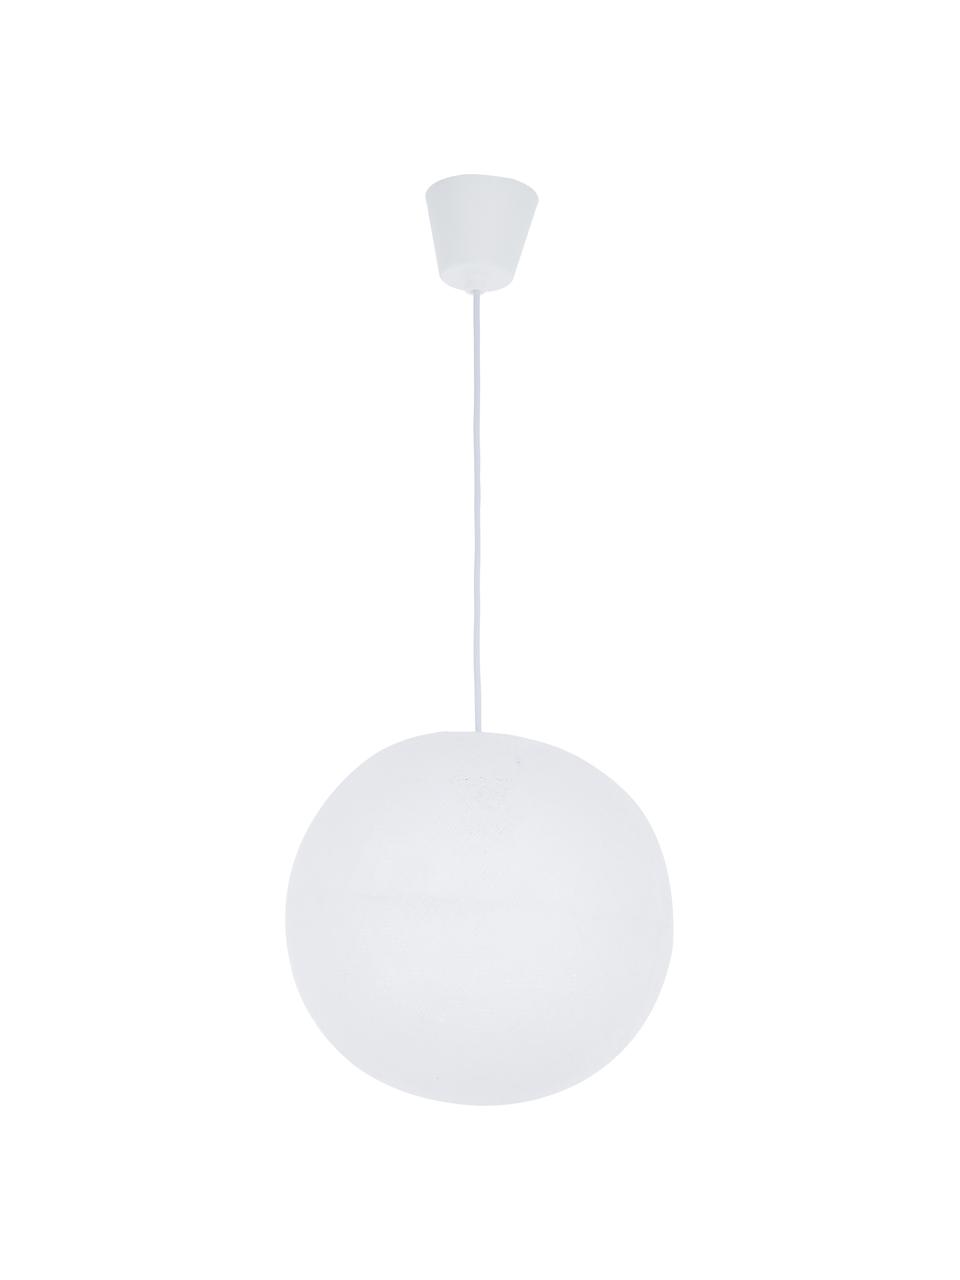 Lampada a sospensione fai da te Colorain, Bianco, Ø 31 x Alt. 135 cm